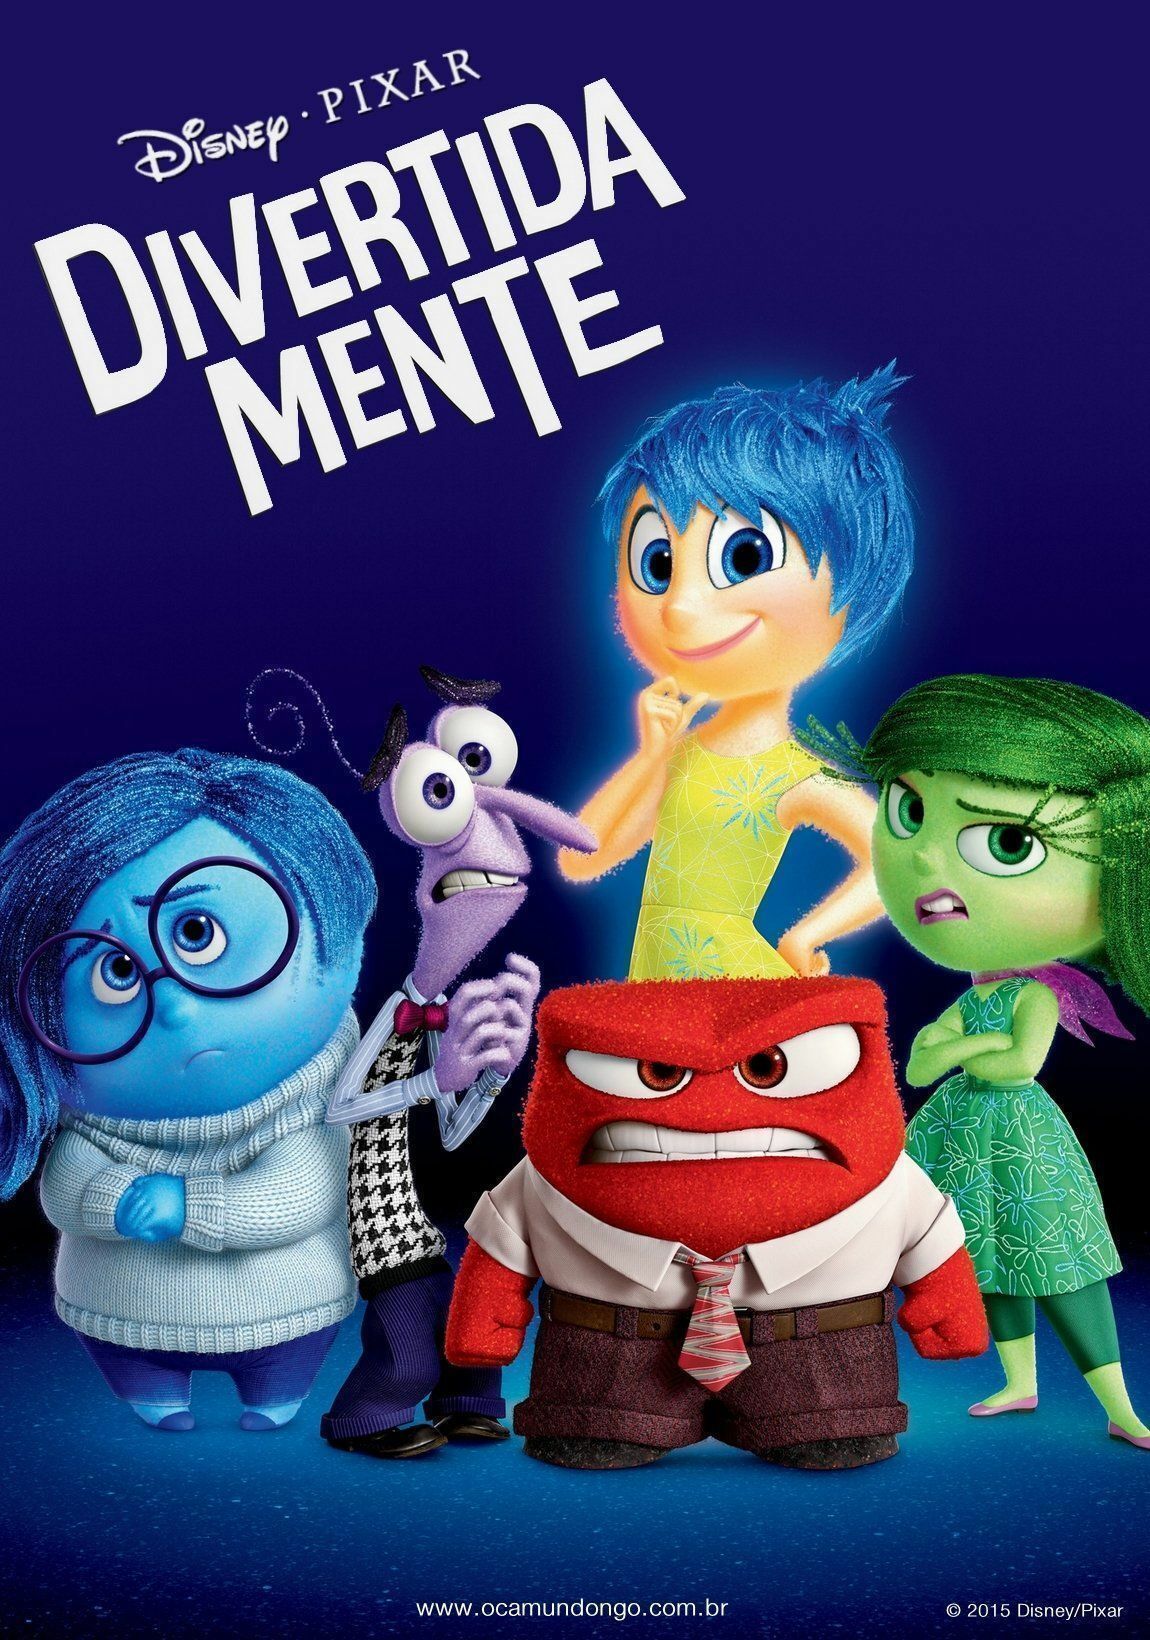 Divertida Mente é um dos filmes que estarão em cartaz no Cine & Vídeo Tarumã desta semana